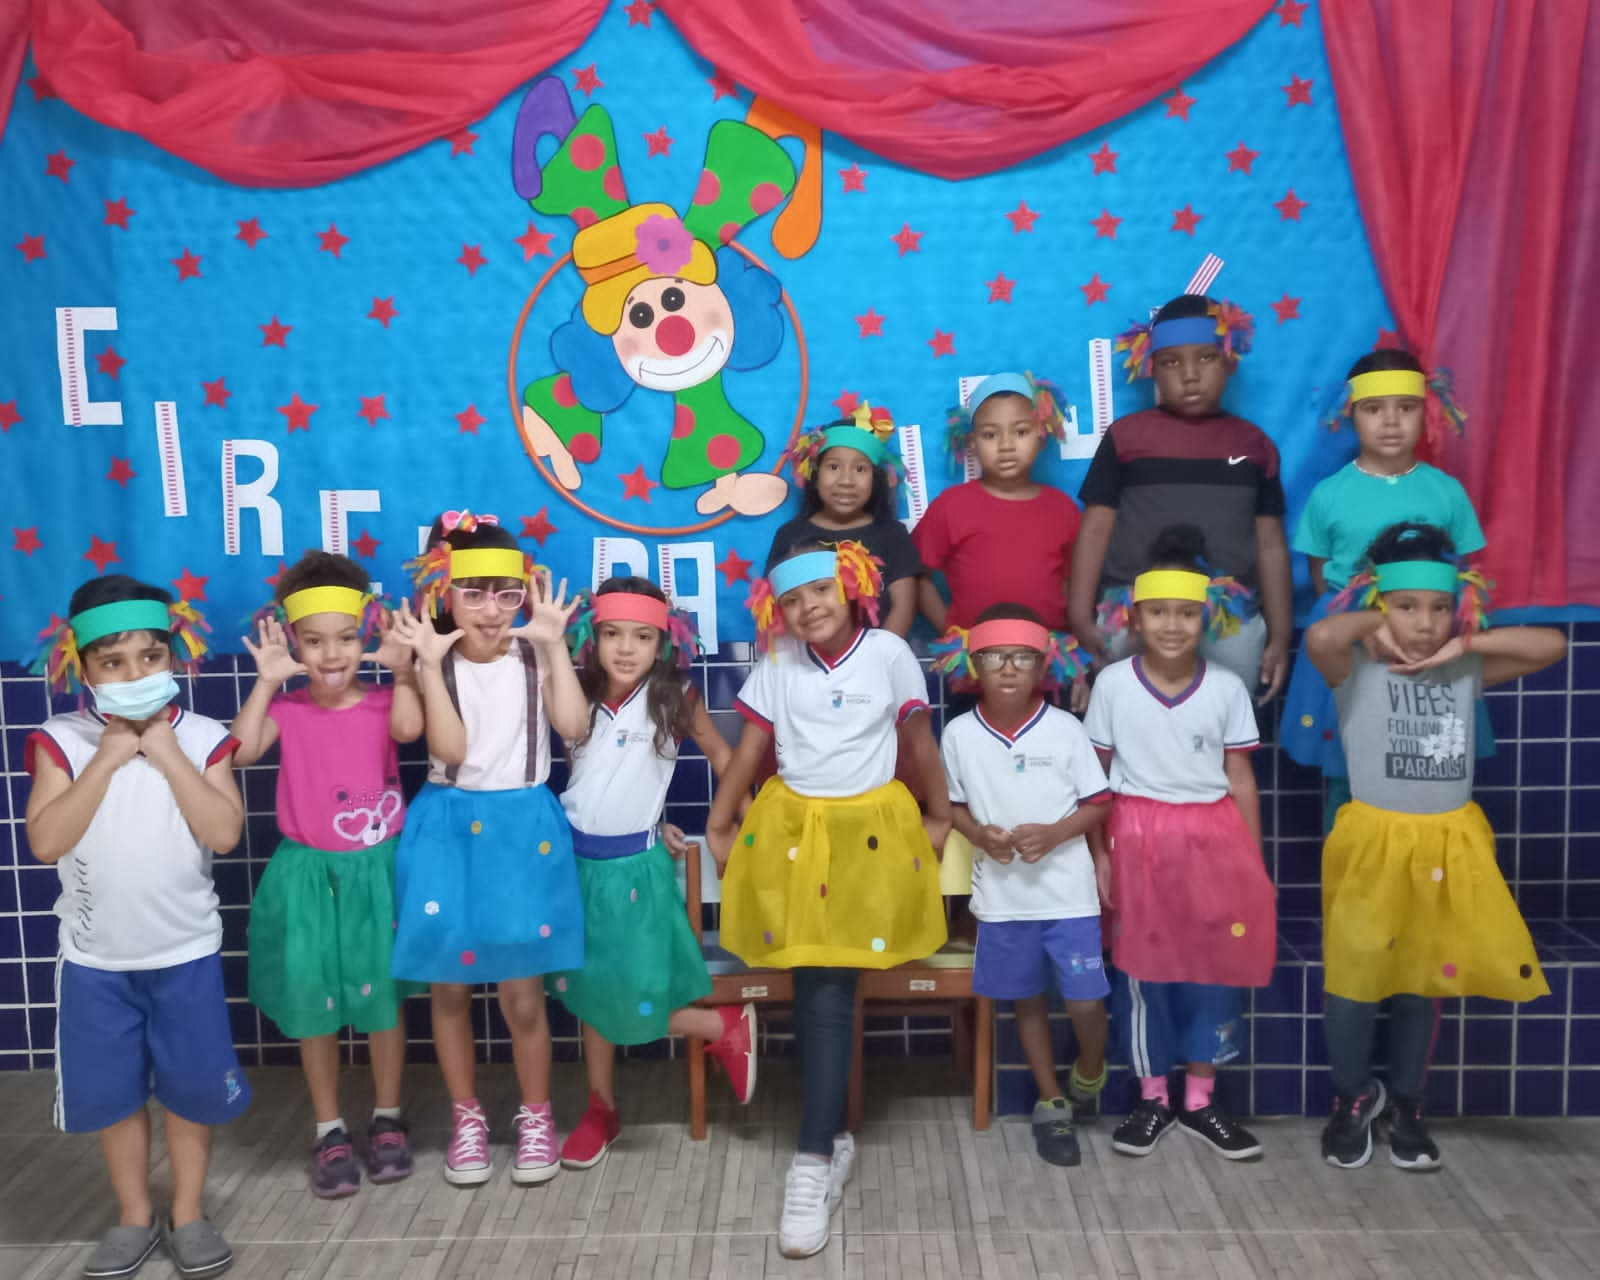 Festa Infantil: Como fazer, Dicas, Decoração e Imagens - Rosa Azul Kids